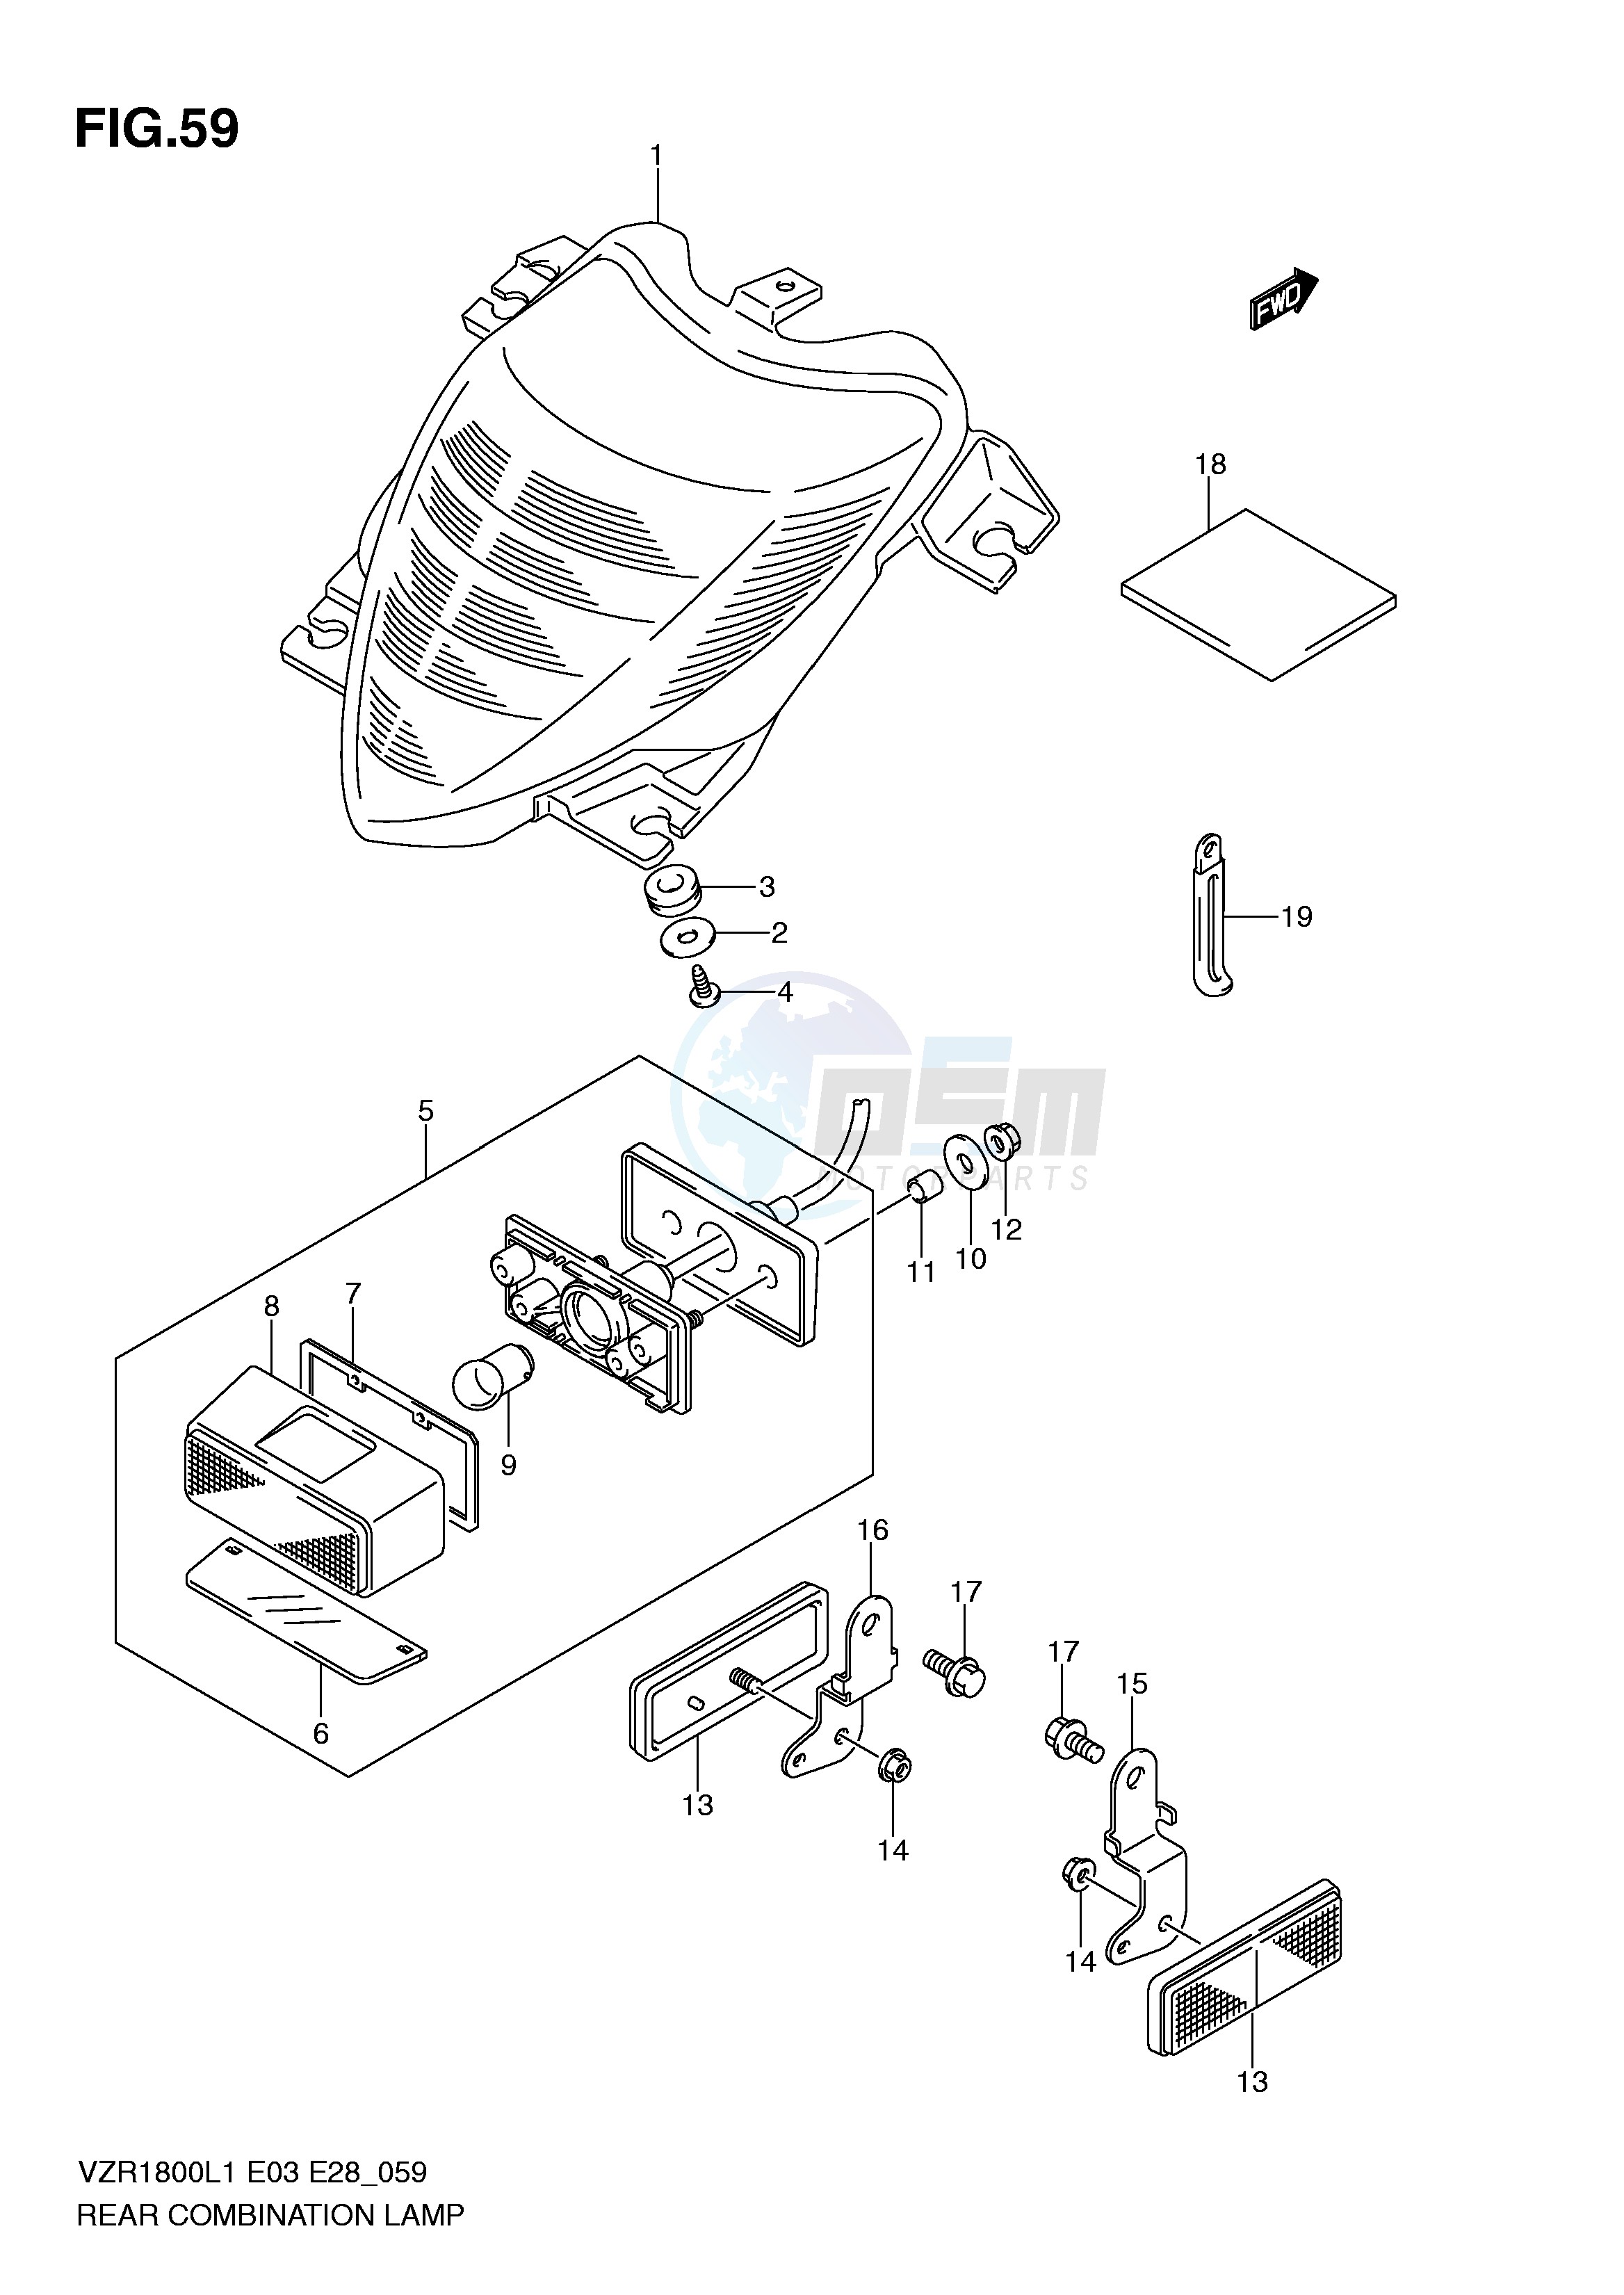 REAR COMBINATION LAMP (VZR1800ZL1 E33) blueprint